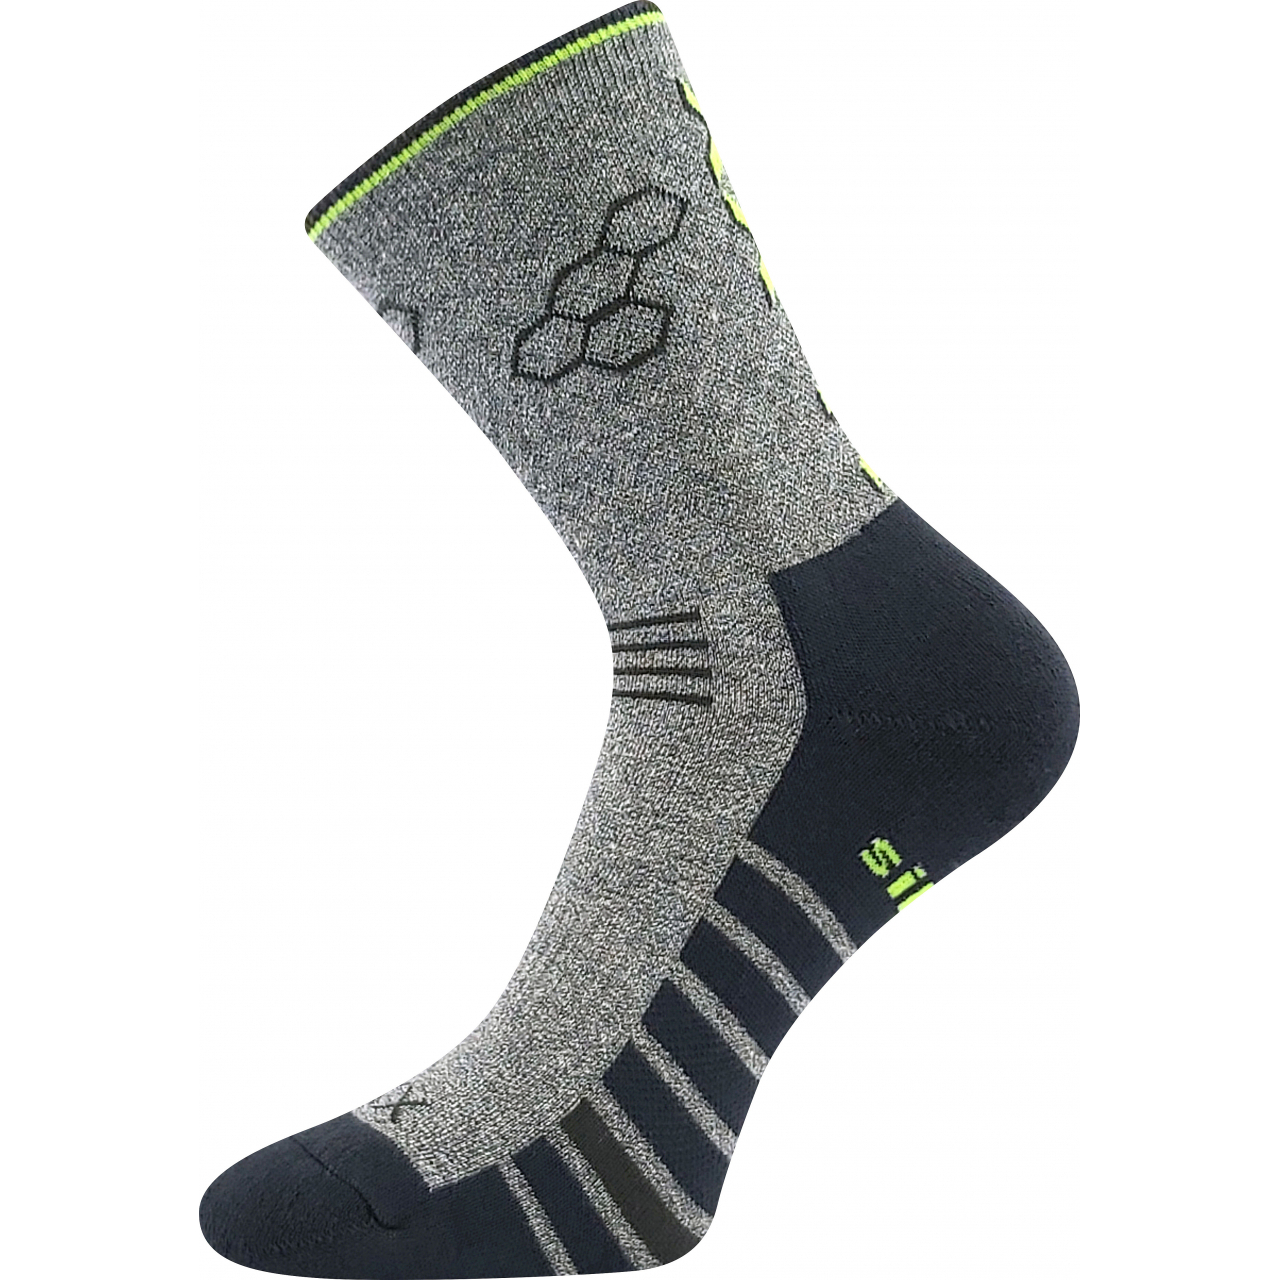 Ponožky sportovní unisex Voxx Virgo - šedé-černé, 39-42